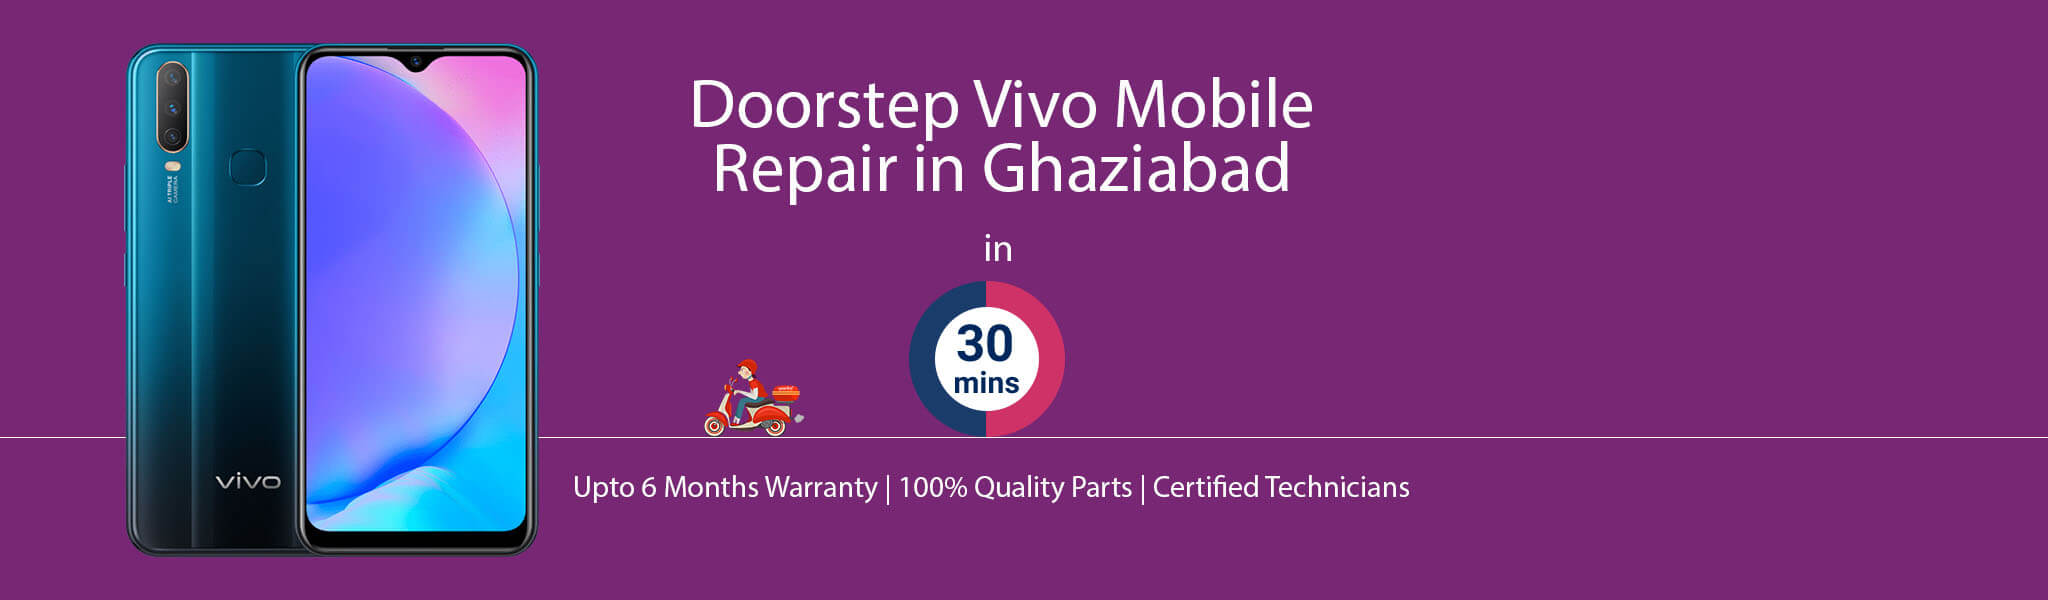 vivo-repair-service-banner-ghaziabad.jpg